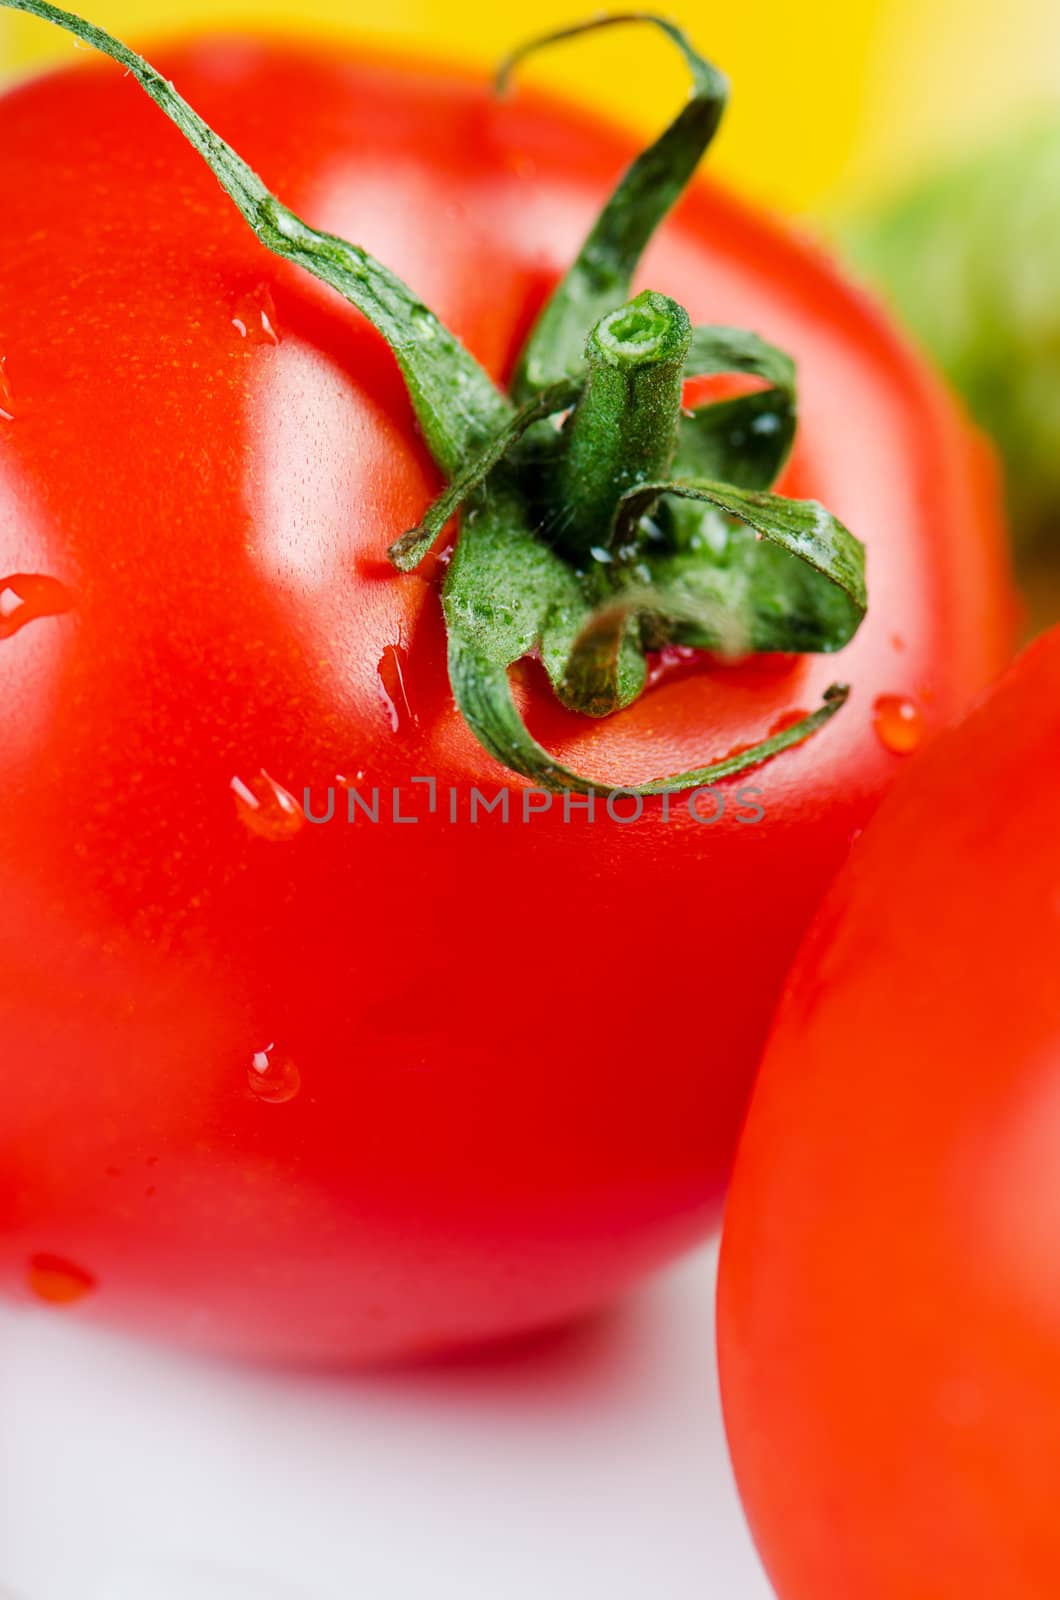 Red ripe tomato close up